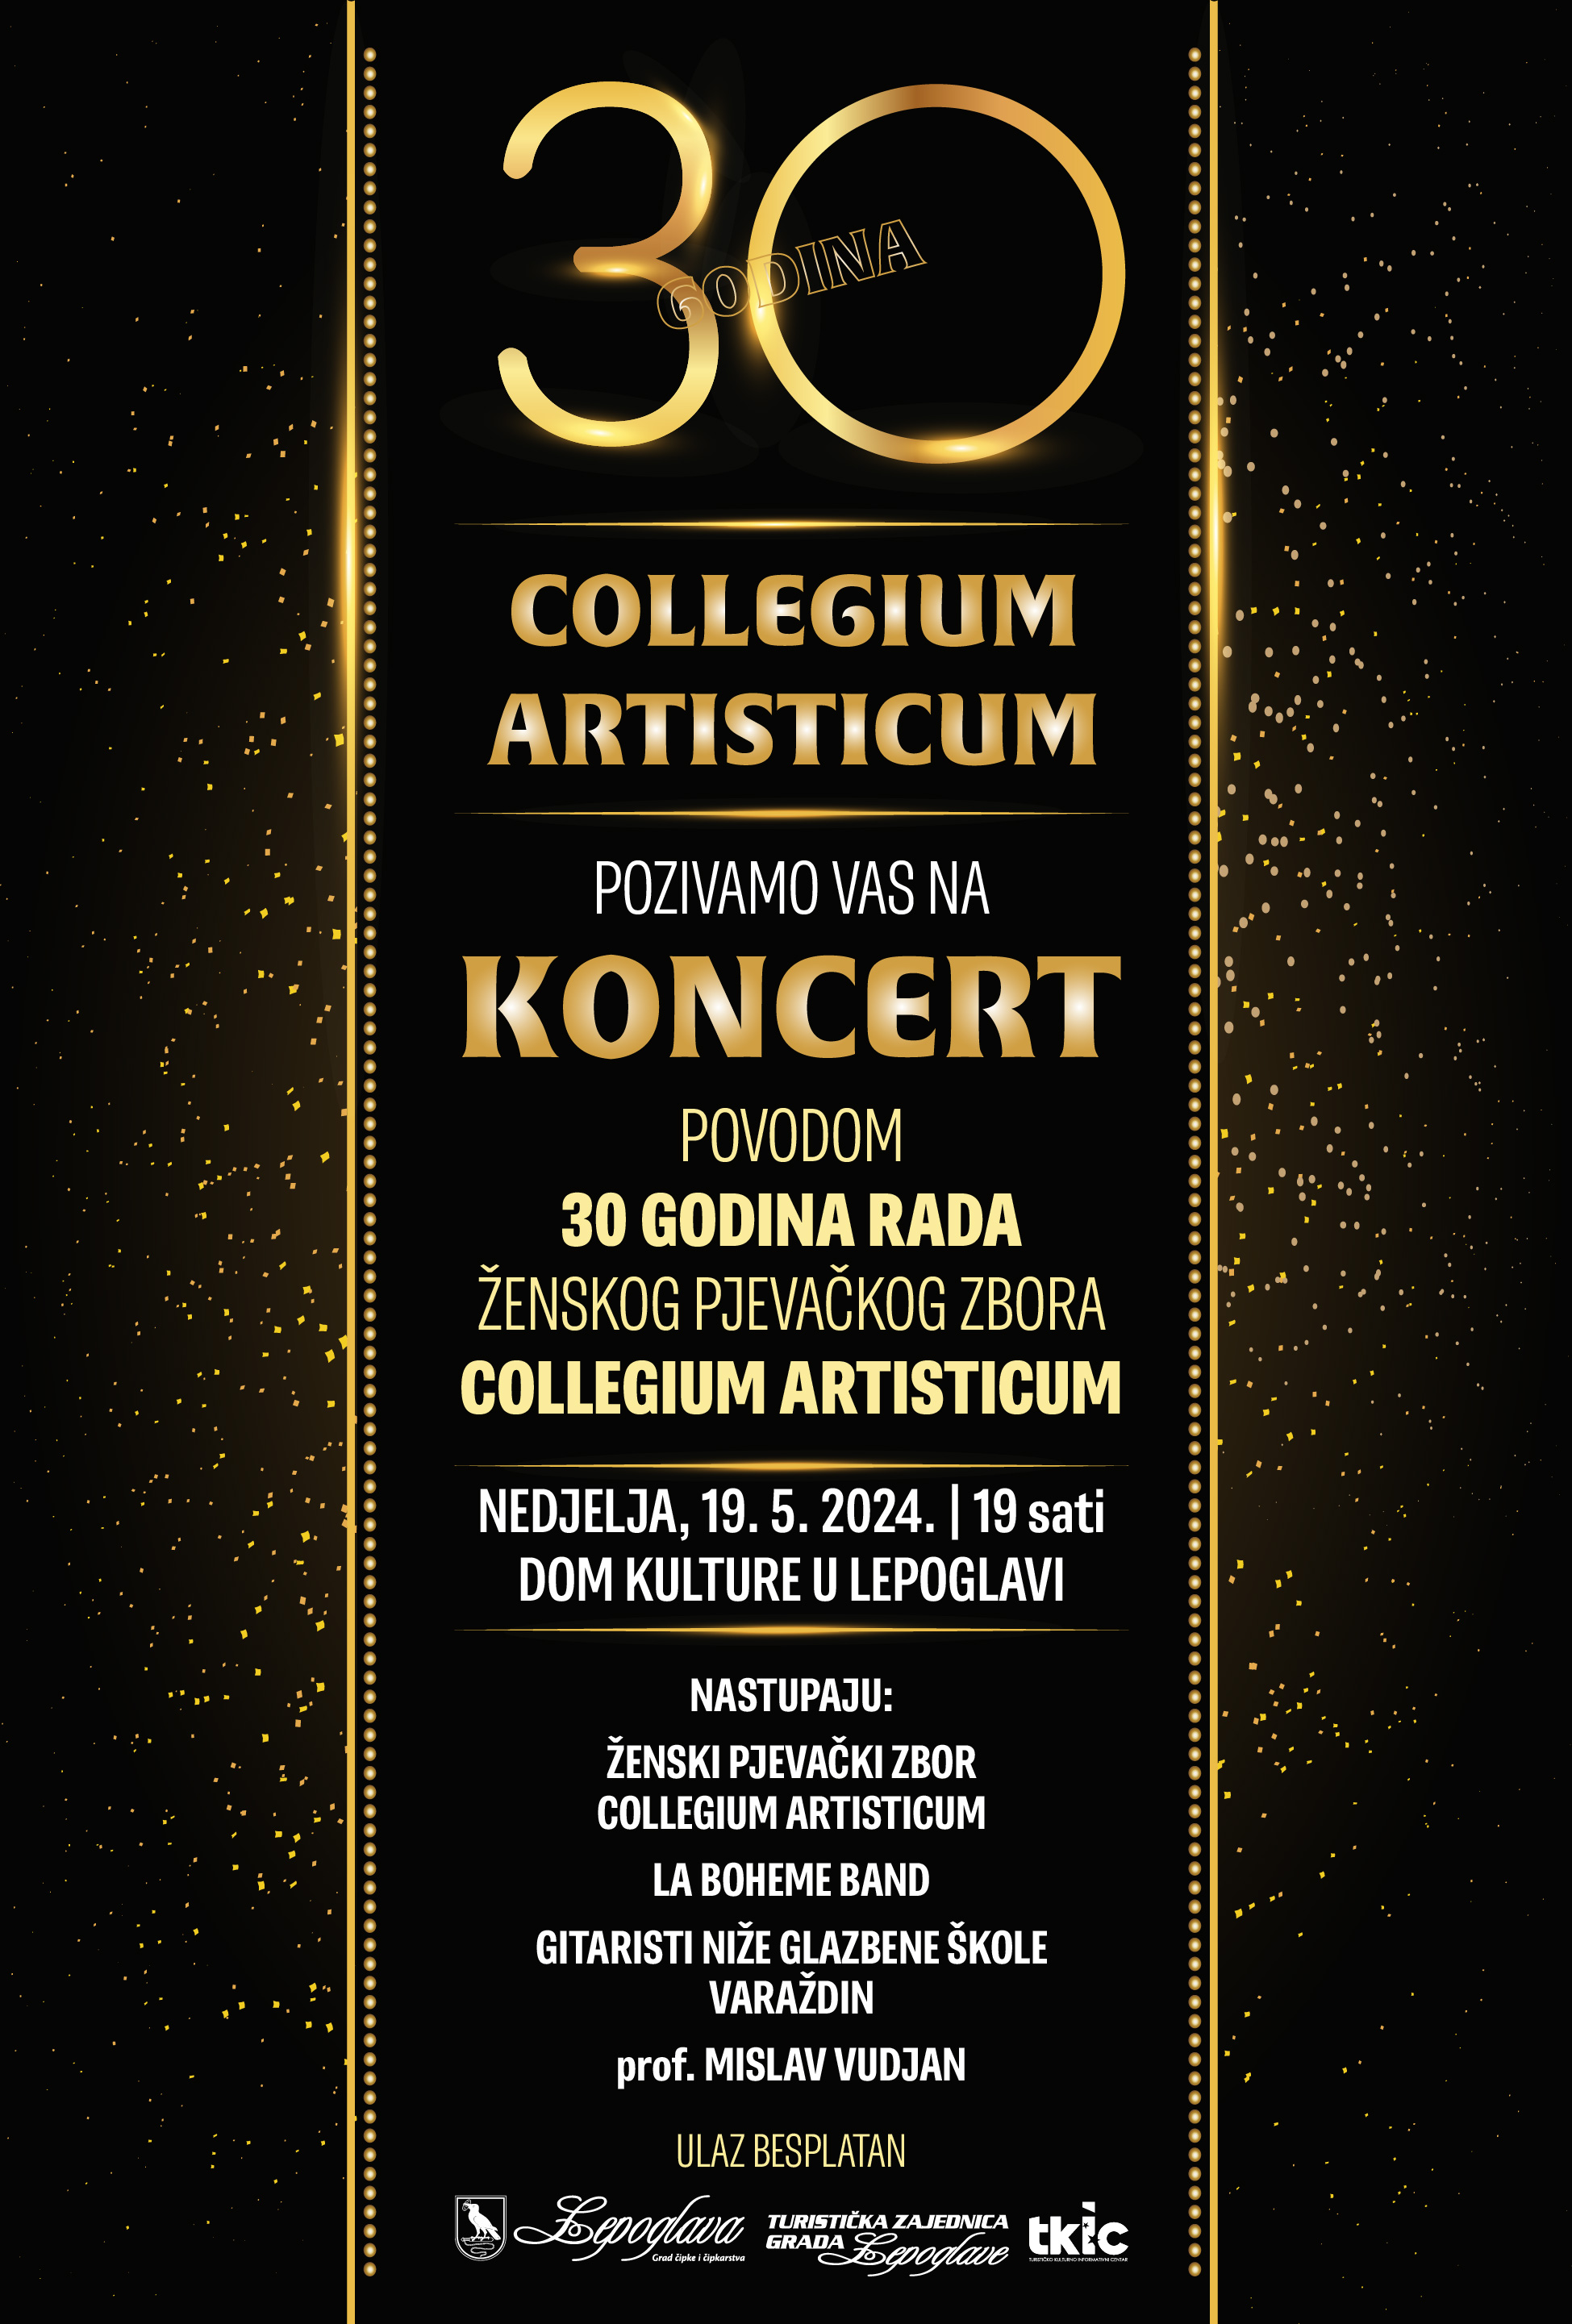 Slavljenički koncert zbora Collegium artisticum